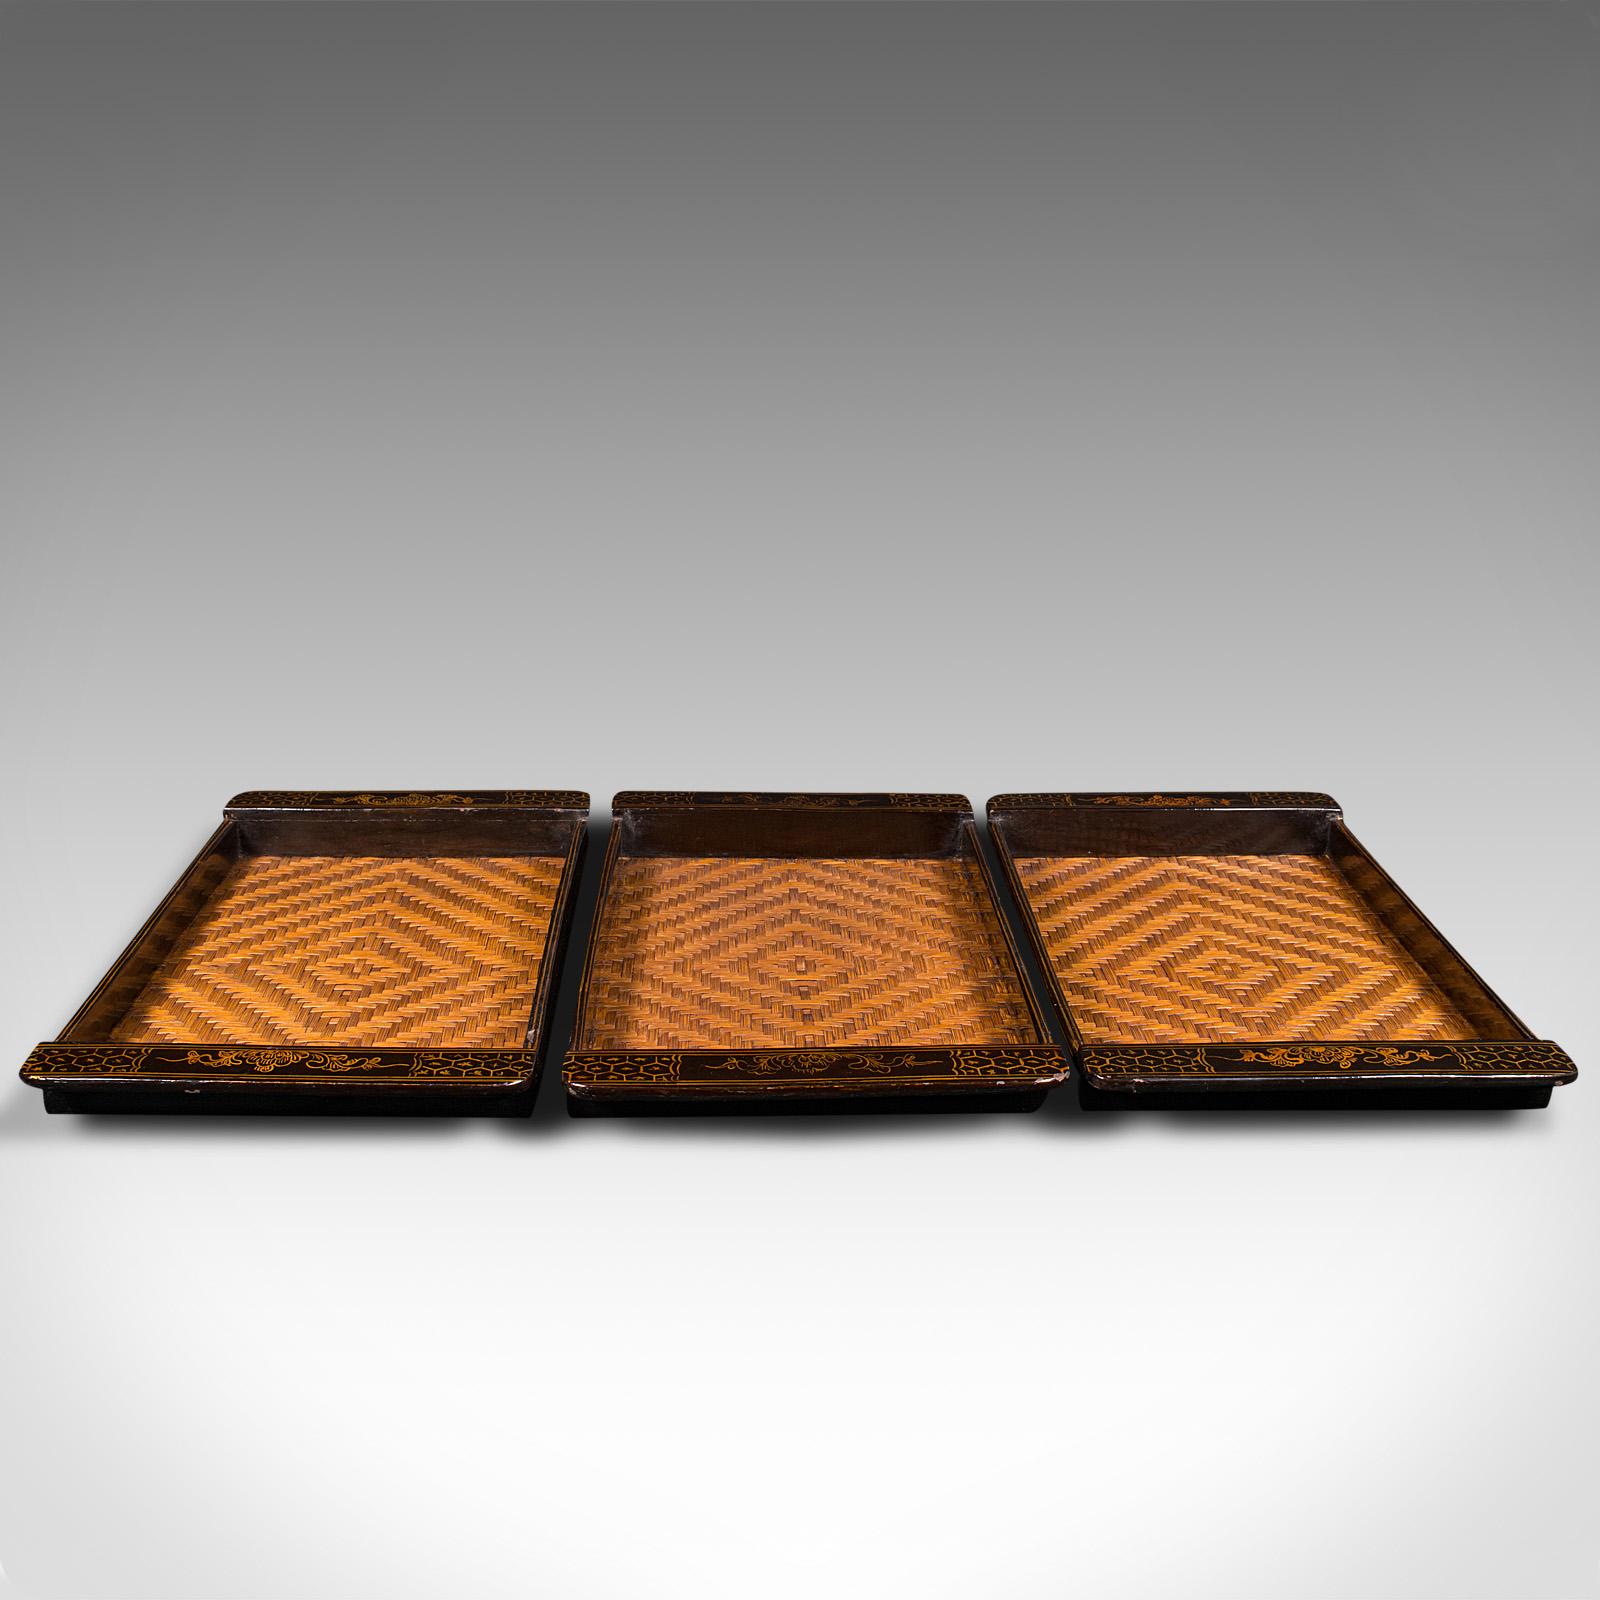 Dies ist ein Trio von Vintage-Tabletts. Japanische, lackierte Servierplatte mit geflochtenem Bambuskern, aus der späten Art Déco-Zeit, um 1940.

Lebendiges Dekor auf drei nützlichen Serviertabletts
Mit wünschenswerter Alterspatina und in gutem